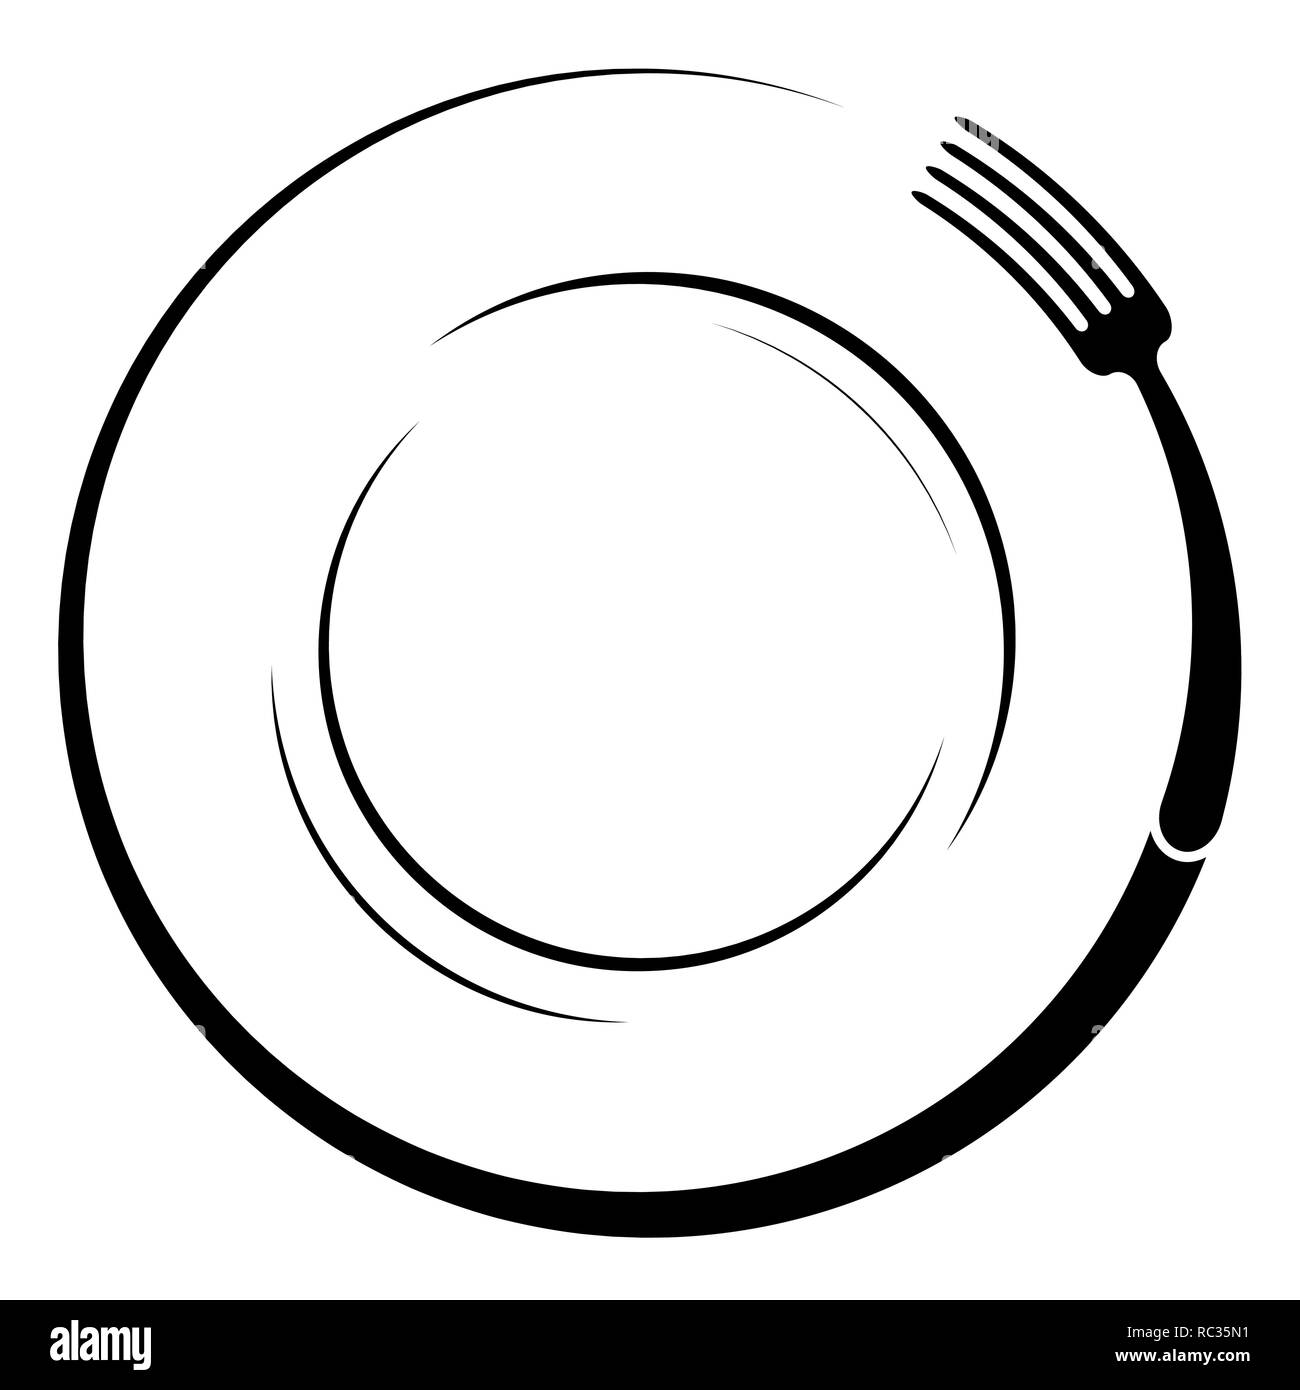 Abstrakte Logo von einem Café oder Restaurant. Eine Gabel auf einem Teller. Eine einfache Gliederung. Stock Vektor